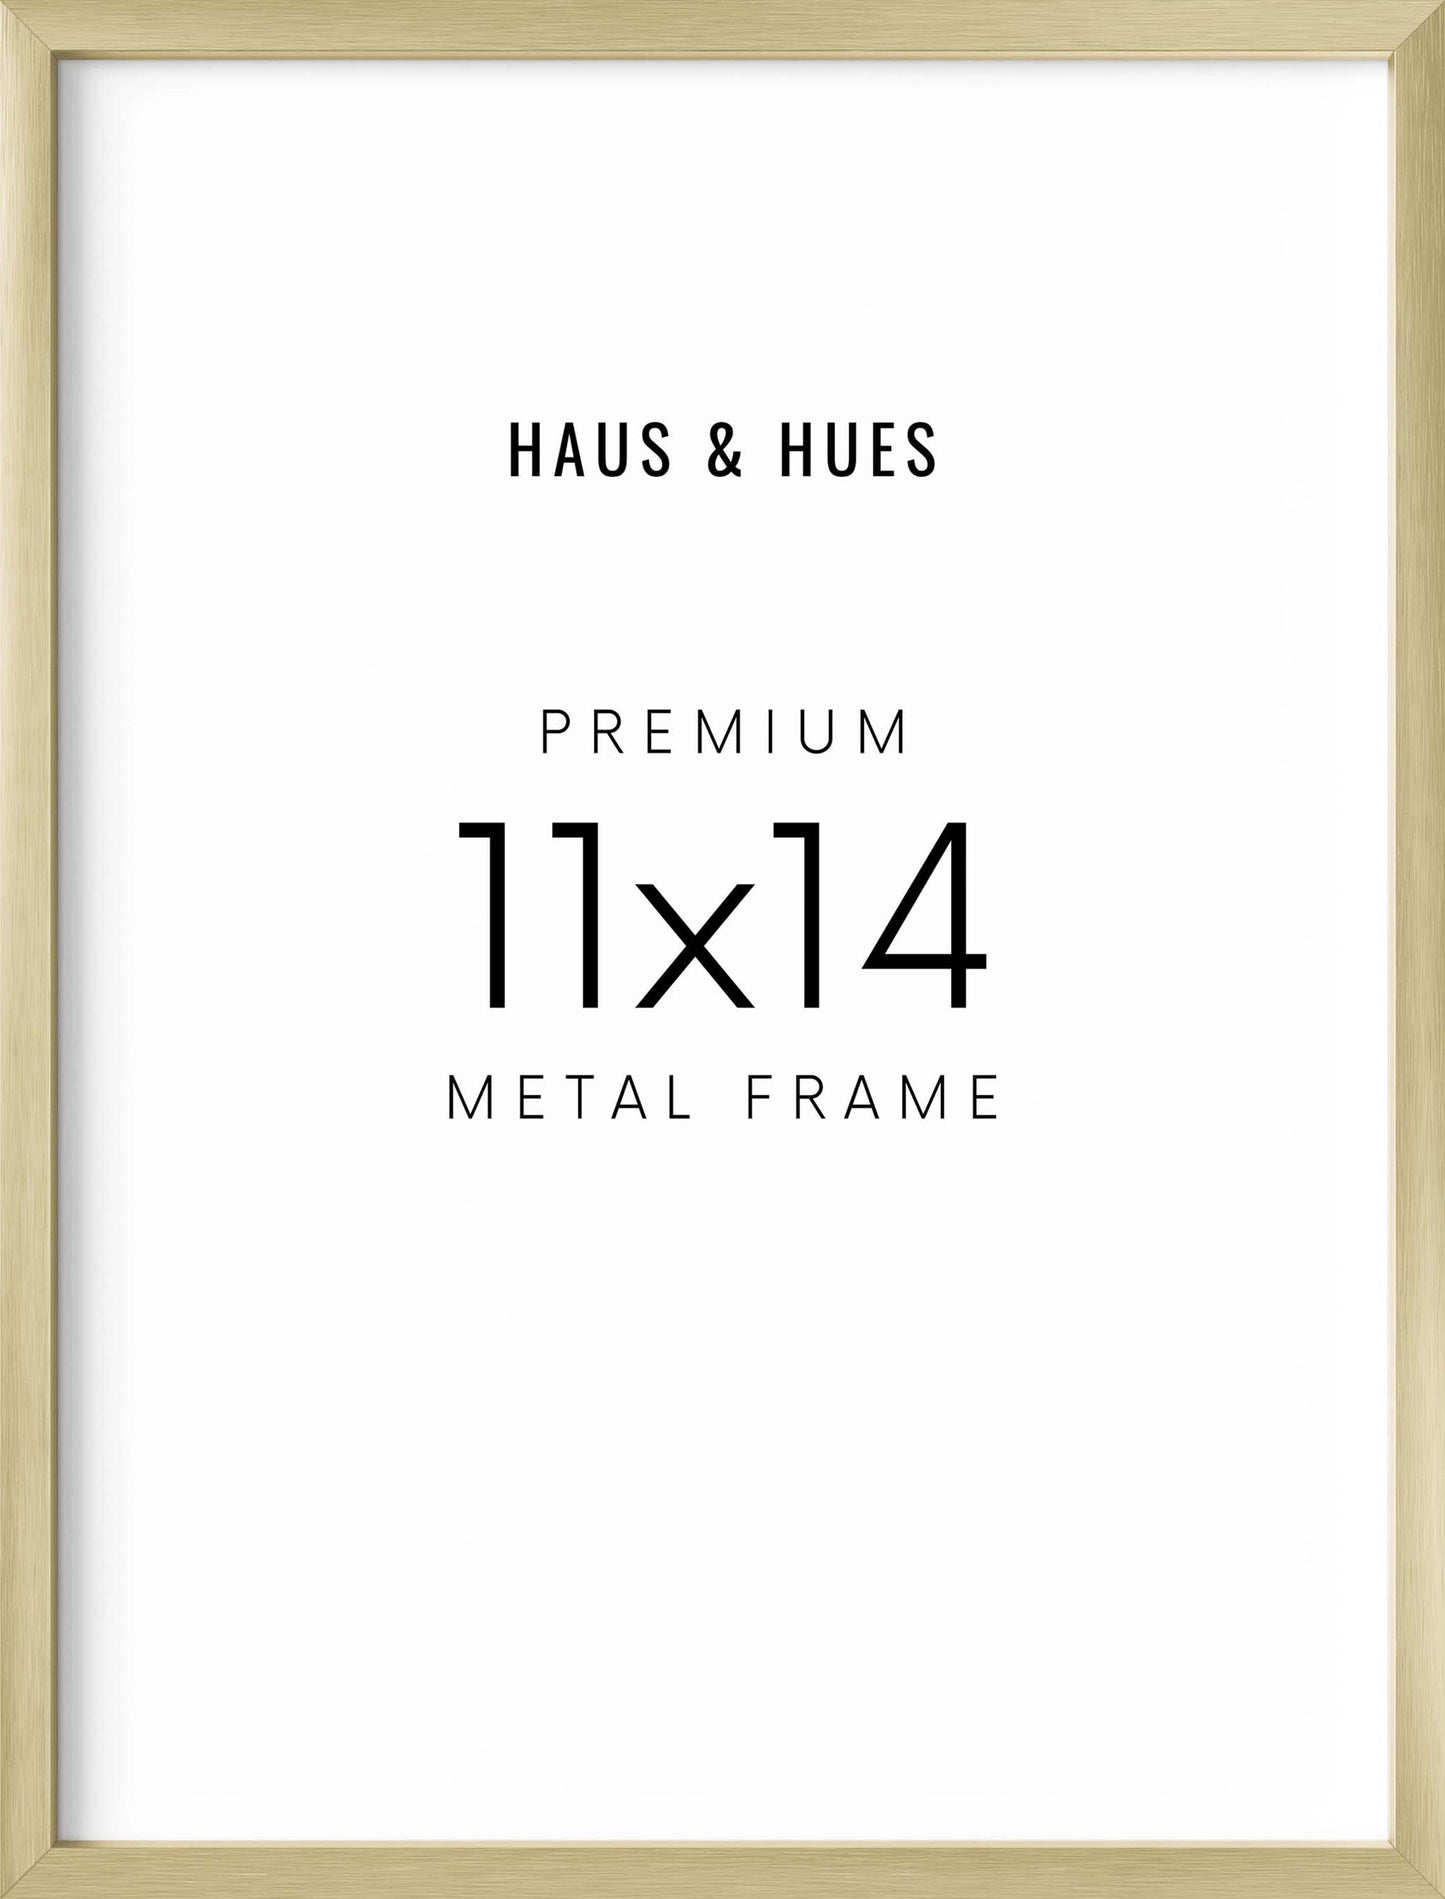 11x14 in, Individual, Gold Aluminum